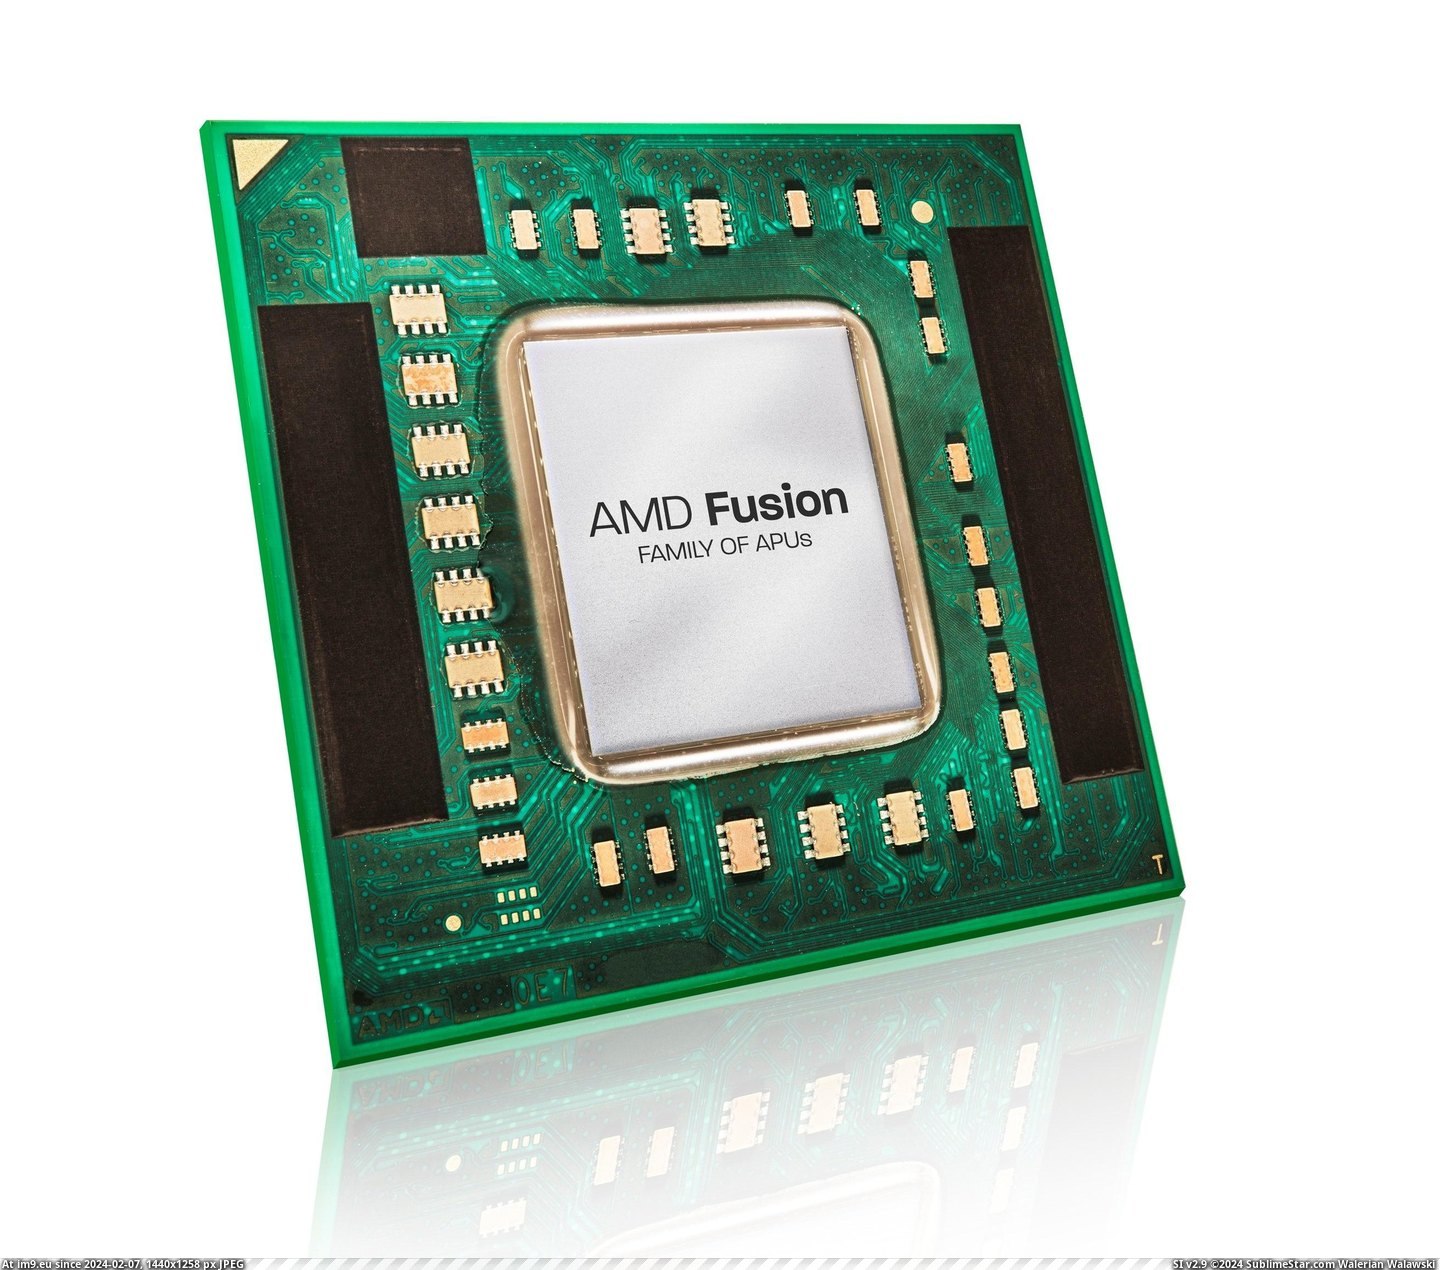 #Fusion #Apu #Amd AMD Fusion APU Pic. (Bild von album Rehost))